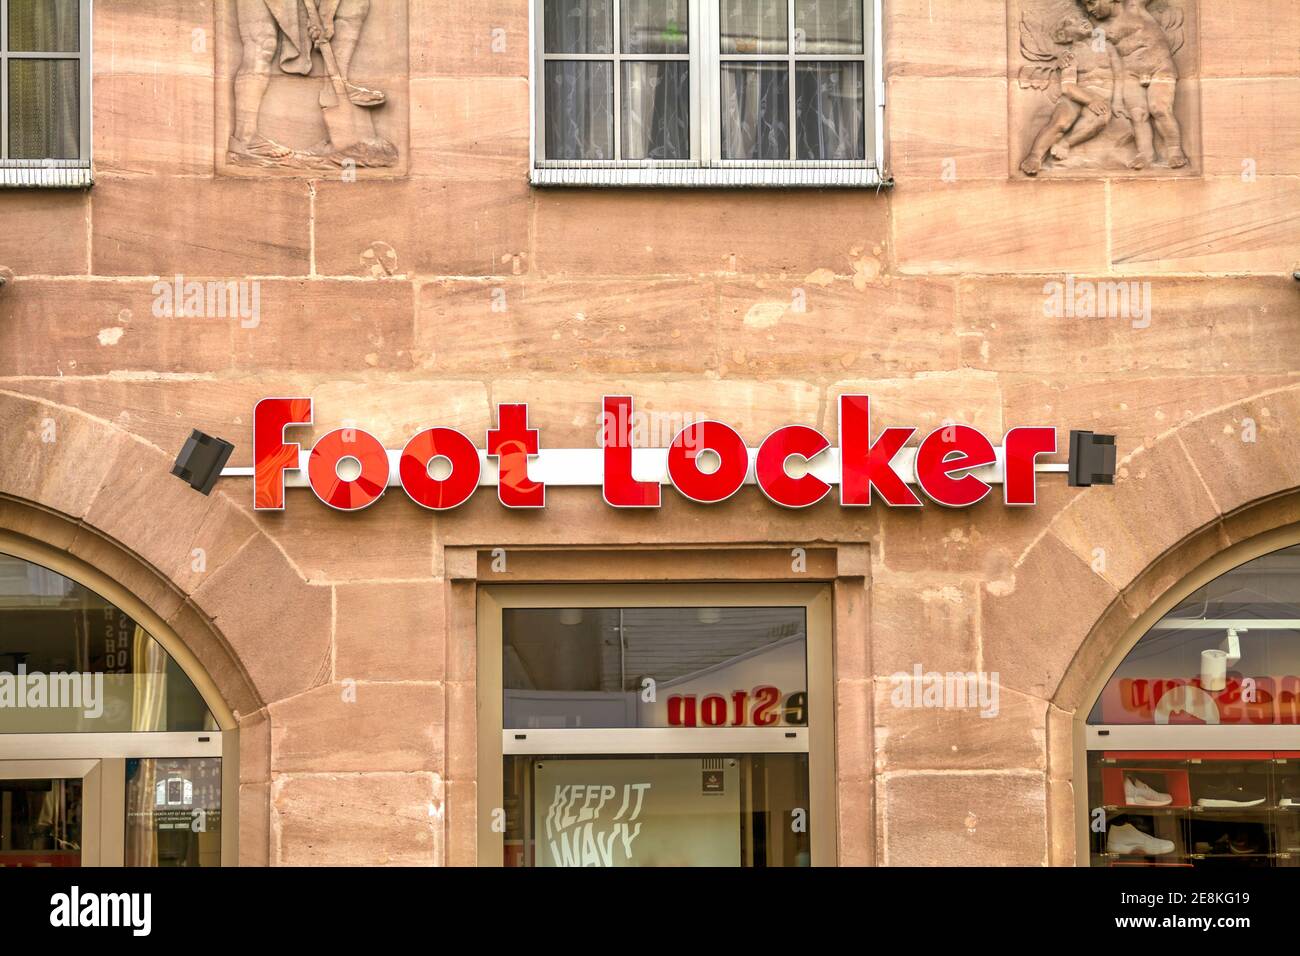 Nürnberg, Deutschland: Foot locker Storefront in der Altstadt Nürnberg.  Foot locker Retail, Inc. Ist ein amerikanischer Händler für Sportbekleidung  und Schuhe Stockfotografie - Alamy